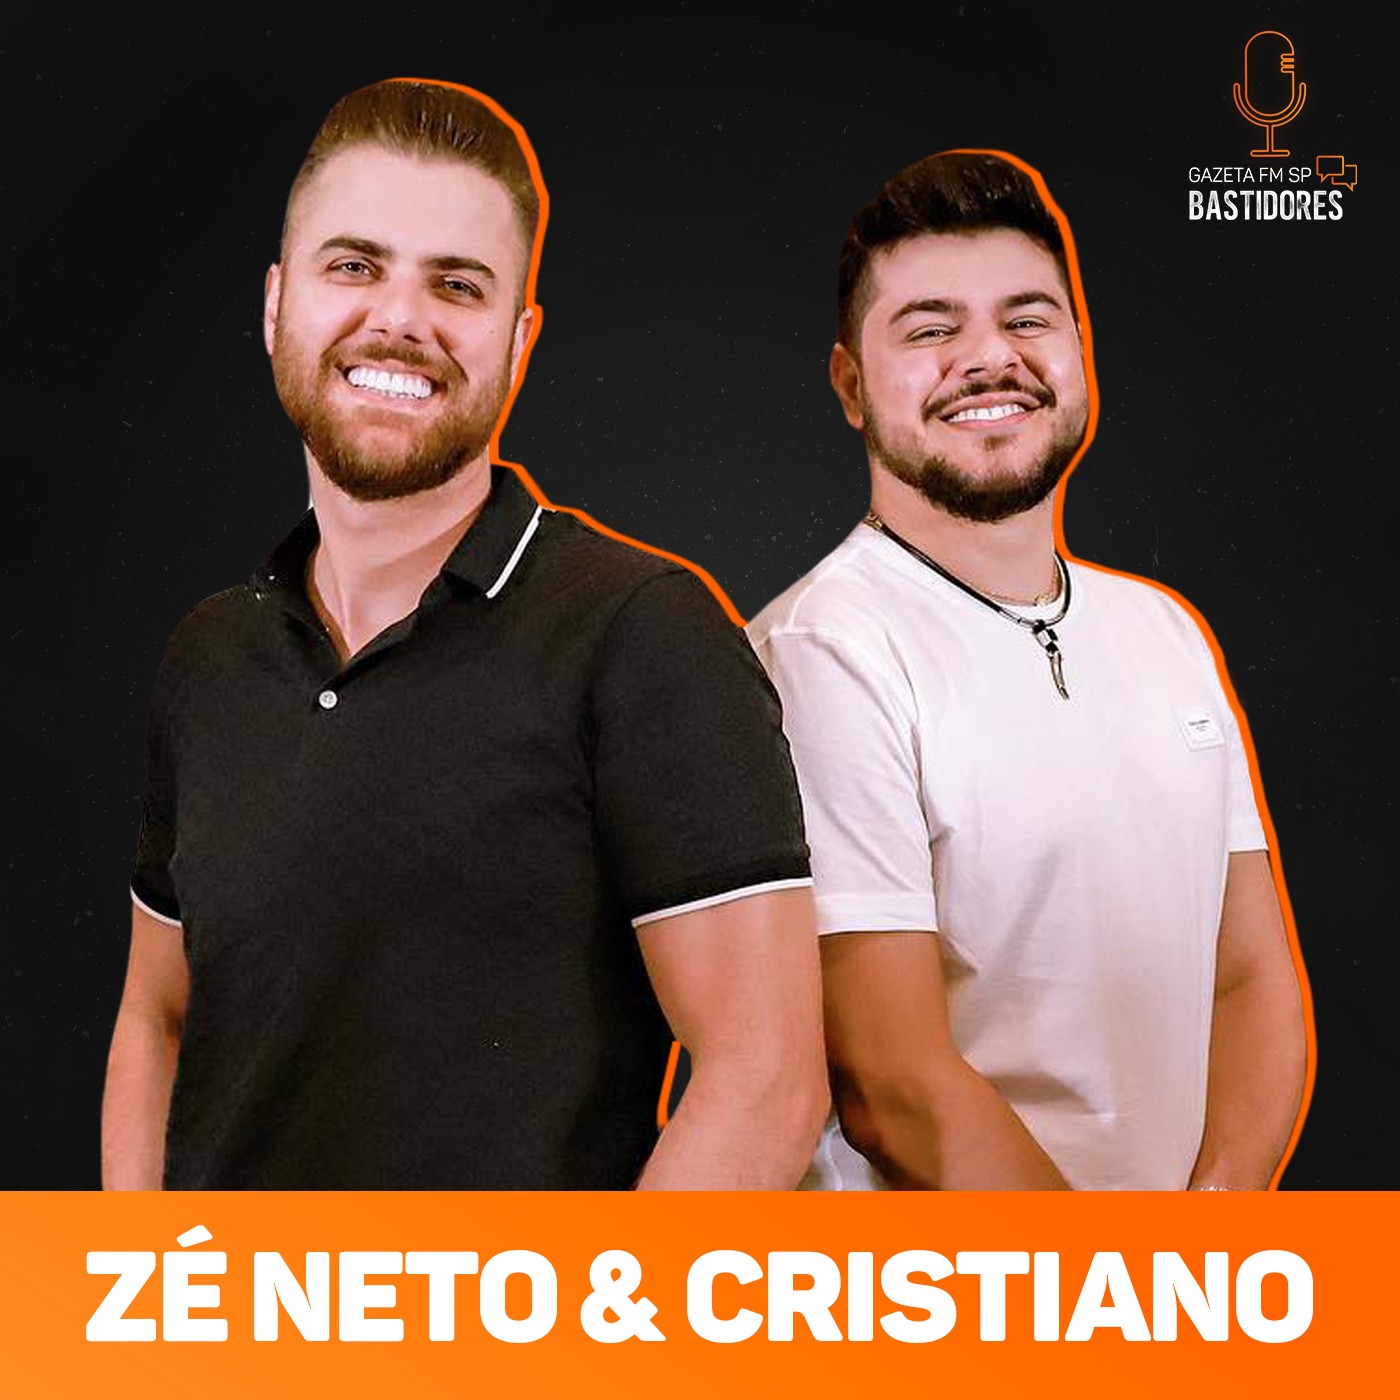 Zé Neto e Cristiano fazem grande revelação do passado envolvendo